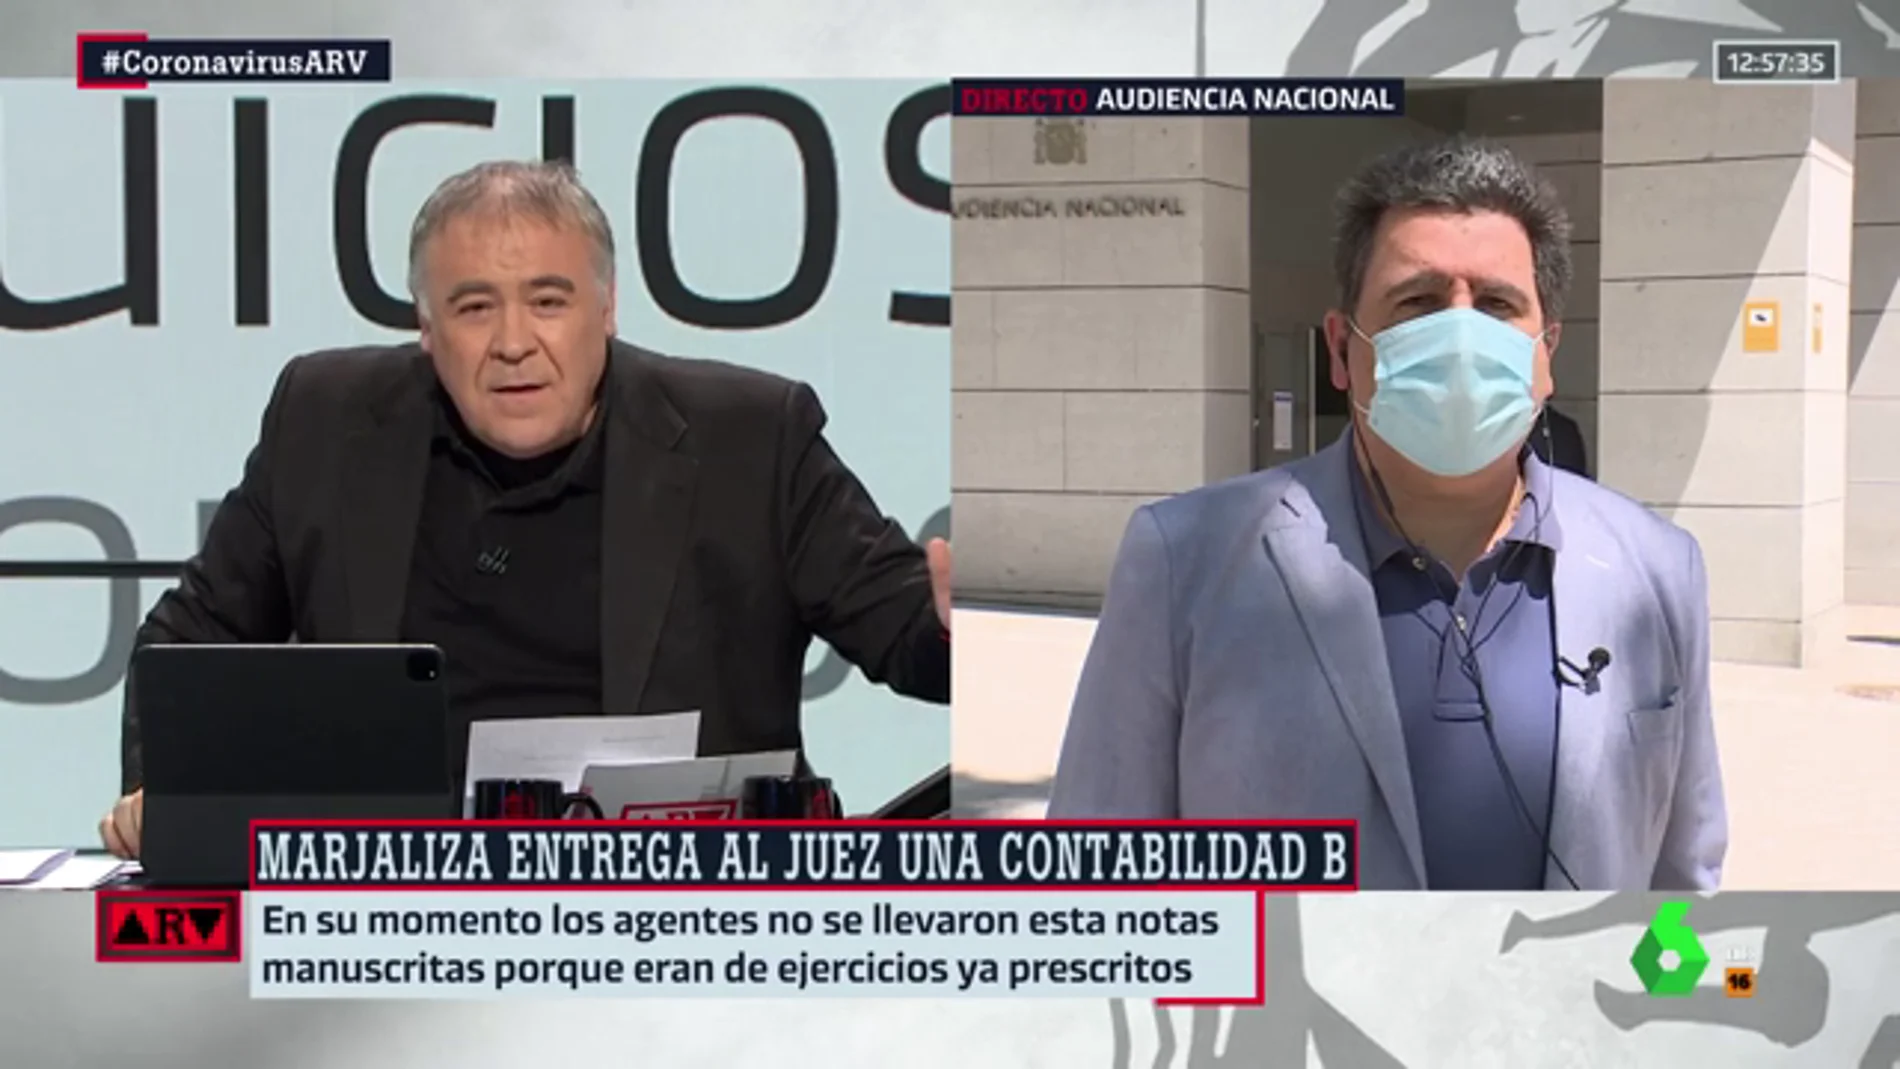 David Marjaliza, sobre los supuestos pagos en B a PP, IU y PSOE: "He recibido amenazas, pero mi respuesta son los libros contables"